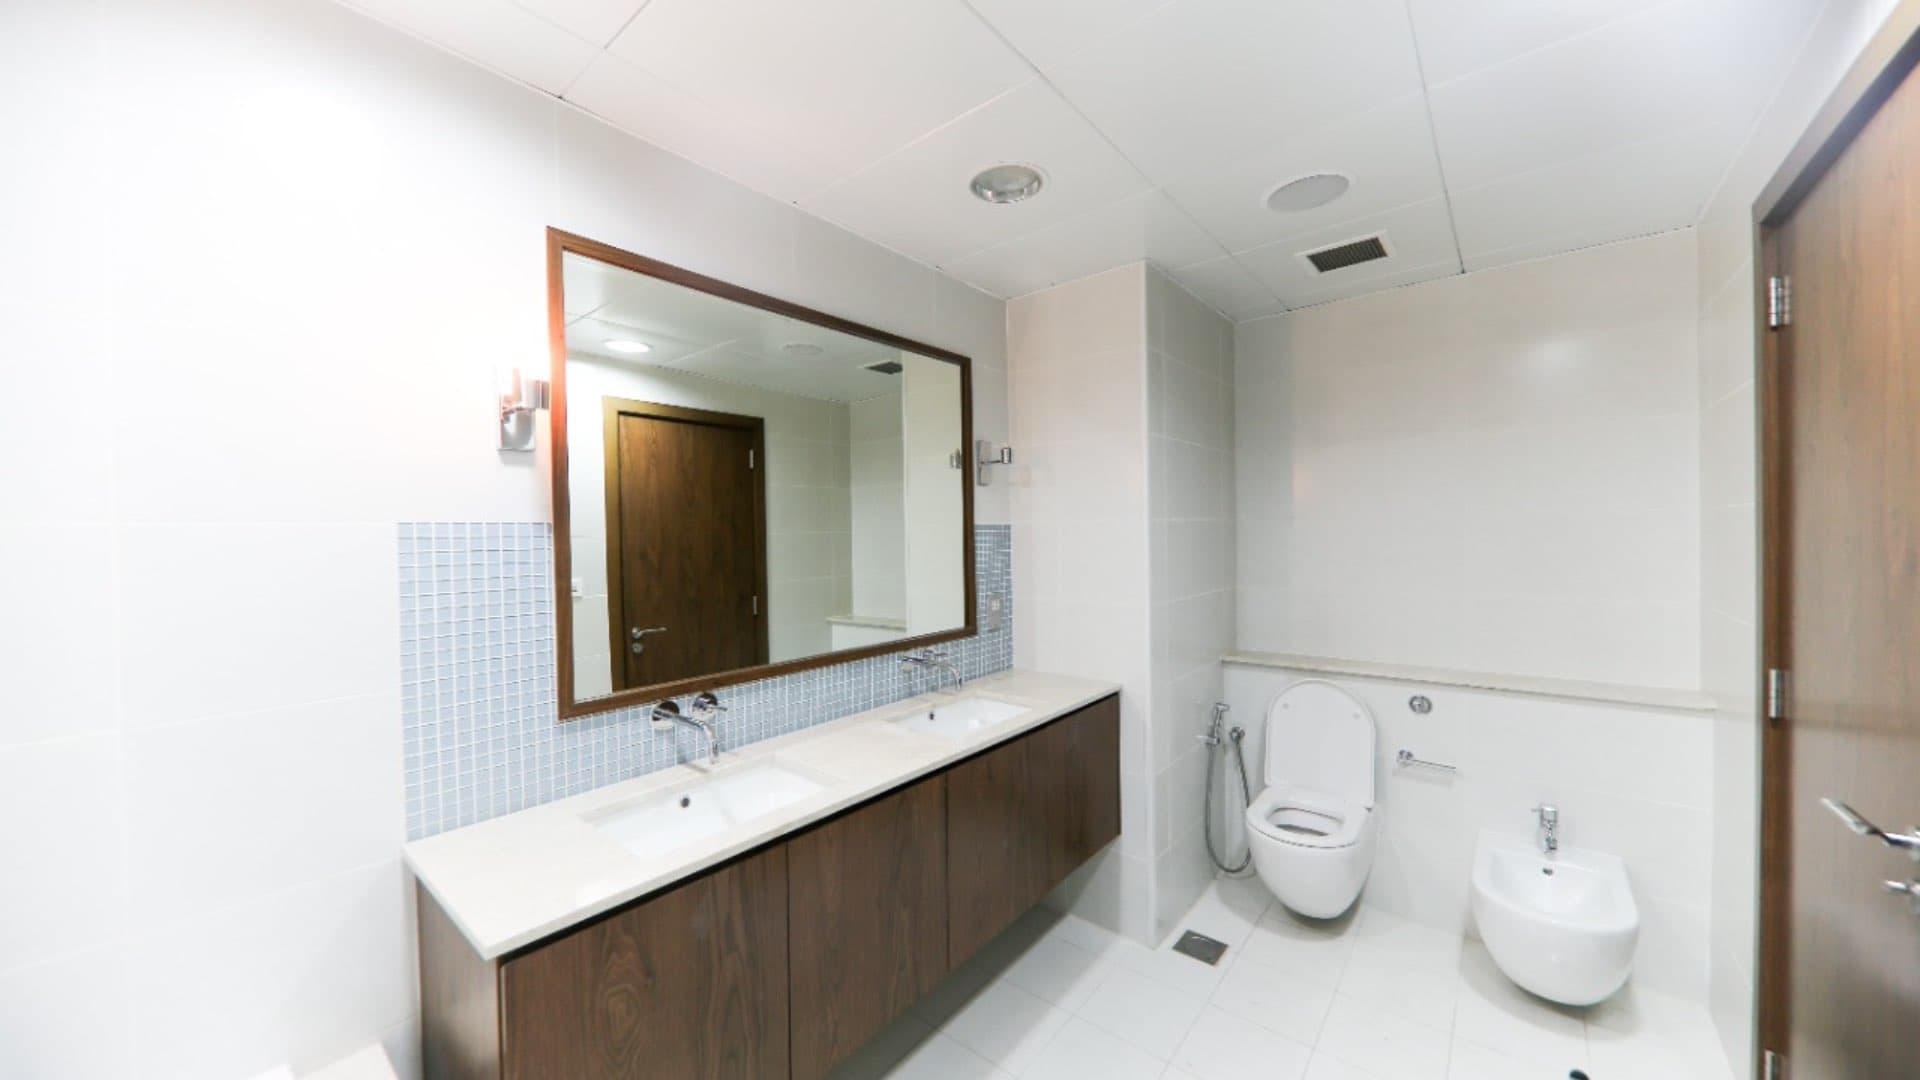 2 Bedroom Apartment For Rent Oceana Lp10812 448aac491216800.jpg